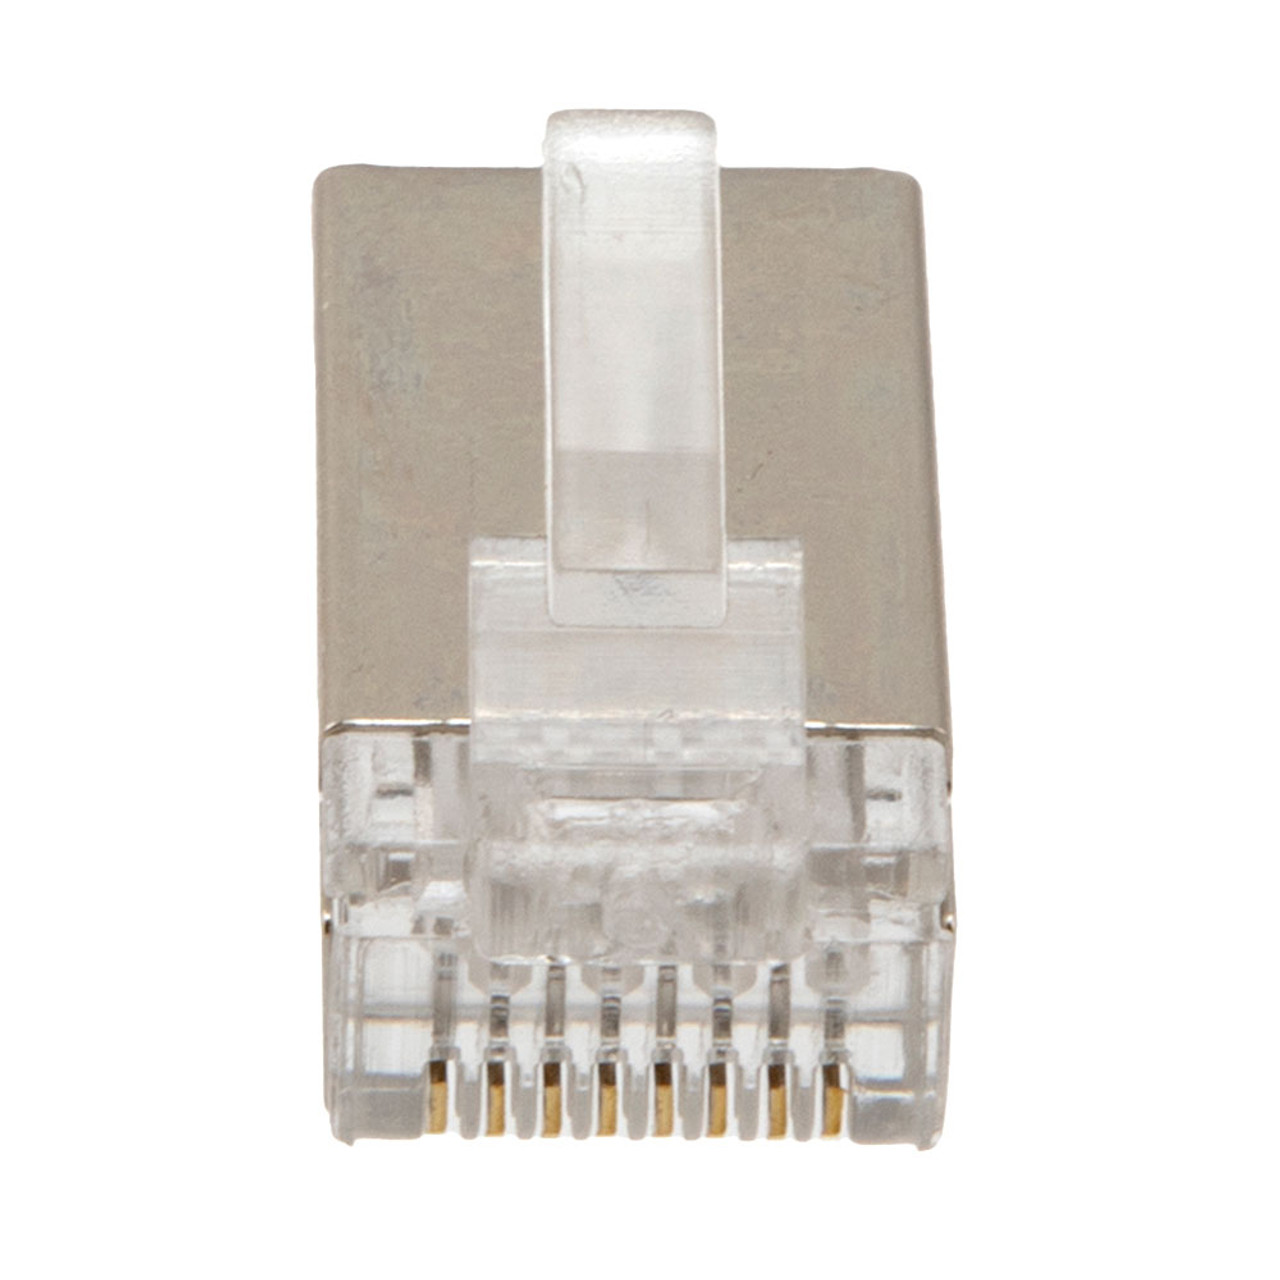 CAT6 UTP Ethernet RJ45 Plug, 100 pack, C6-8P8C, CE Compliance 100